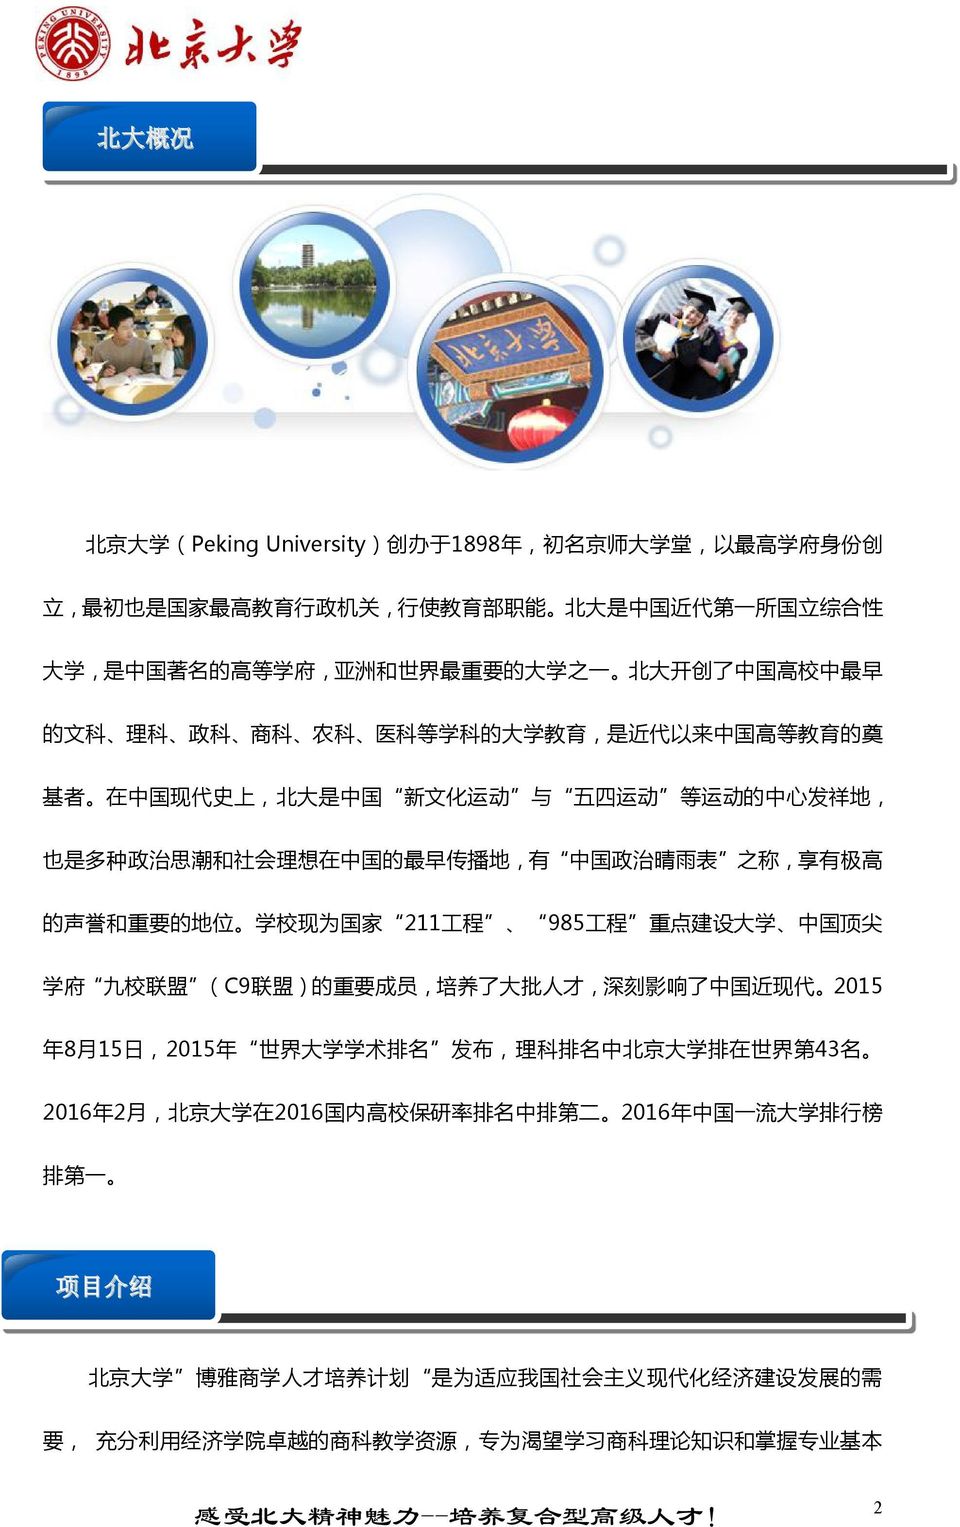 中 国 的 最 早 传 播 地, 有 中 国 政 治 晴 雨 表 之 称, 享 有 极 高 的 声 誉 和 重 要 的 地 位 学 校 现 为 国 家 211 工 程 985 工 程 重 点 建 设 大 学 中 国 顶 尖 学 府 九 校 联 盟 (C9 联 盟 ) 的 重 要 成 员, 培 养 了 大 批 人 才, 深 刻 影 响 了 中 国 近 现 代 2015 年 8 月 15